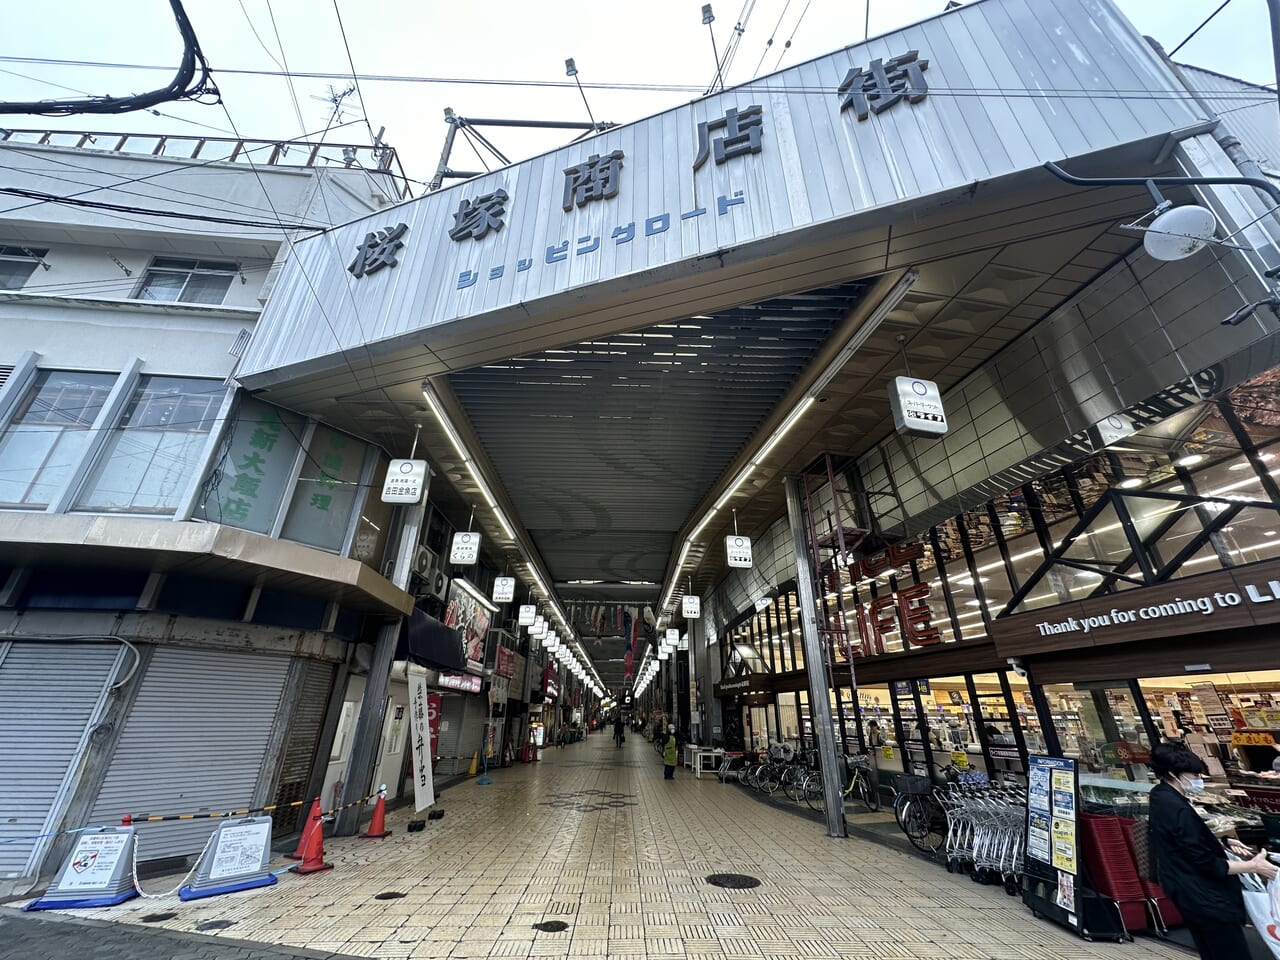 桜塚商店街